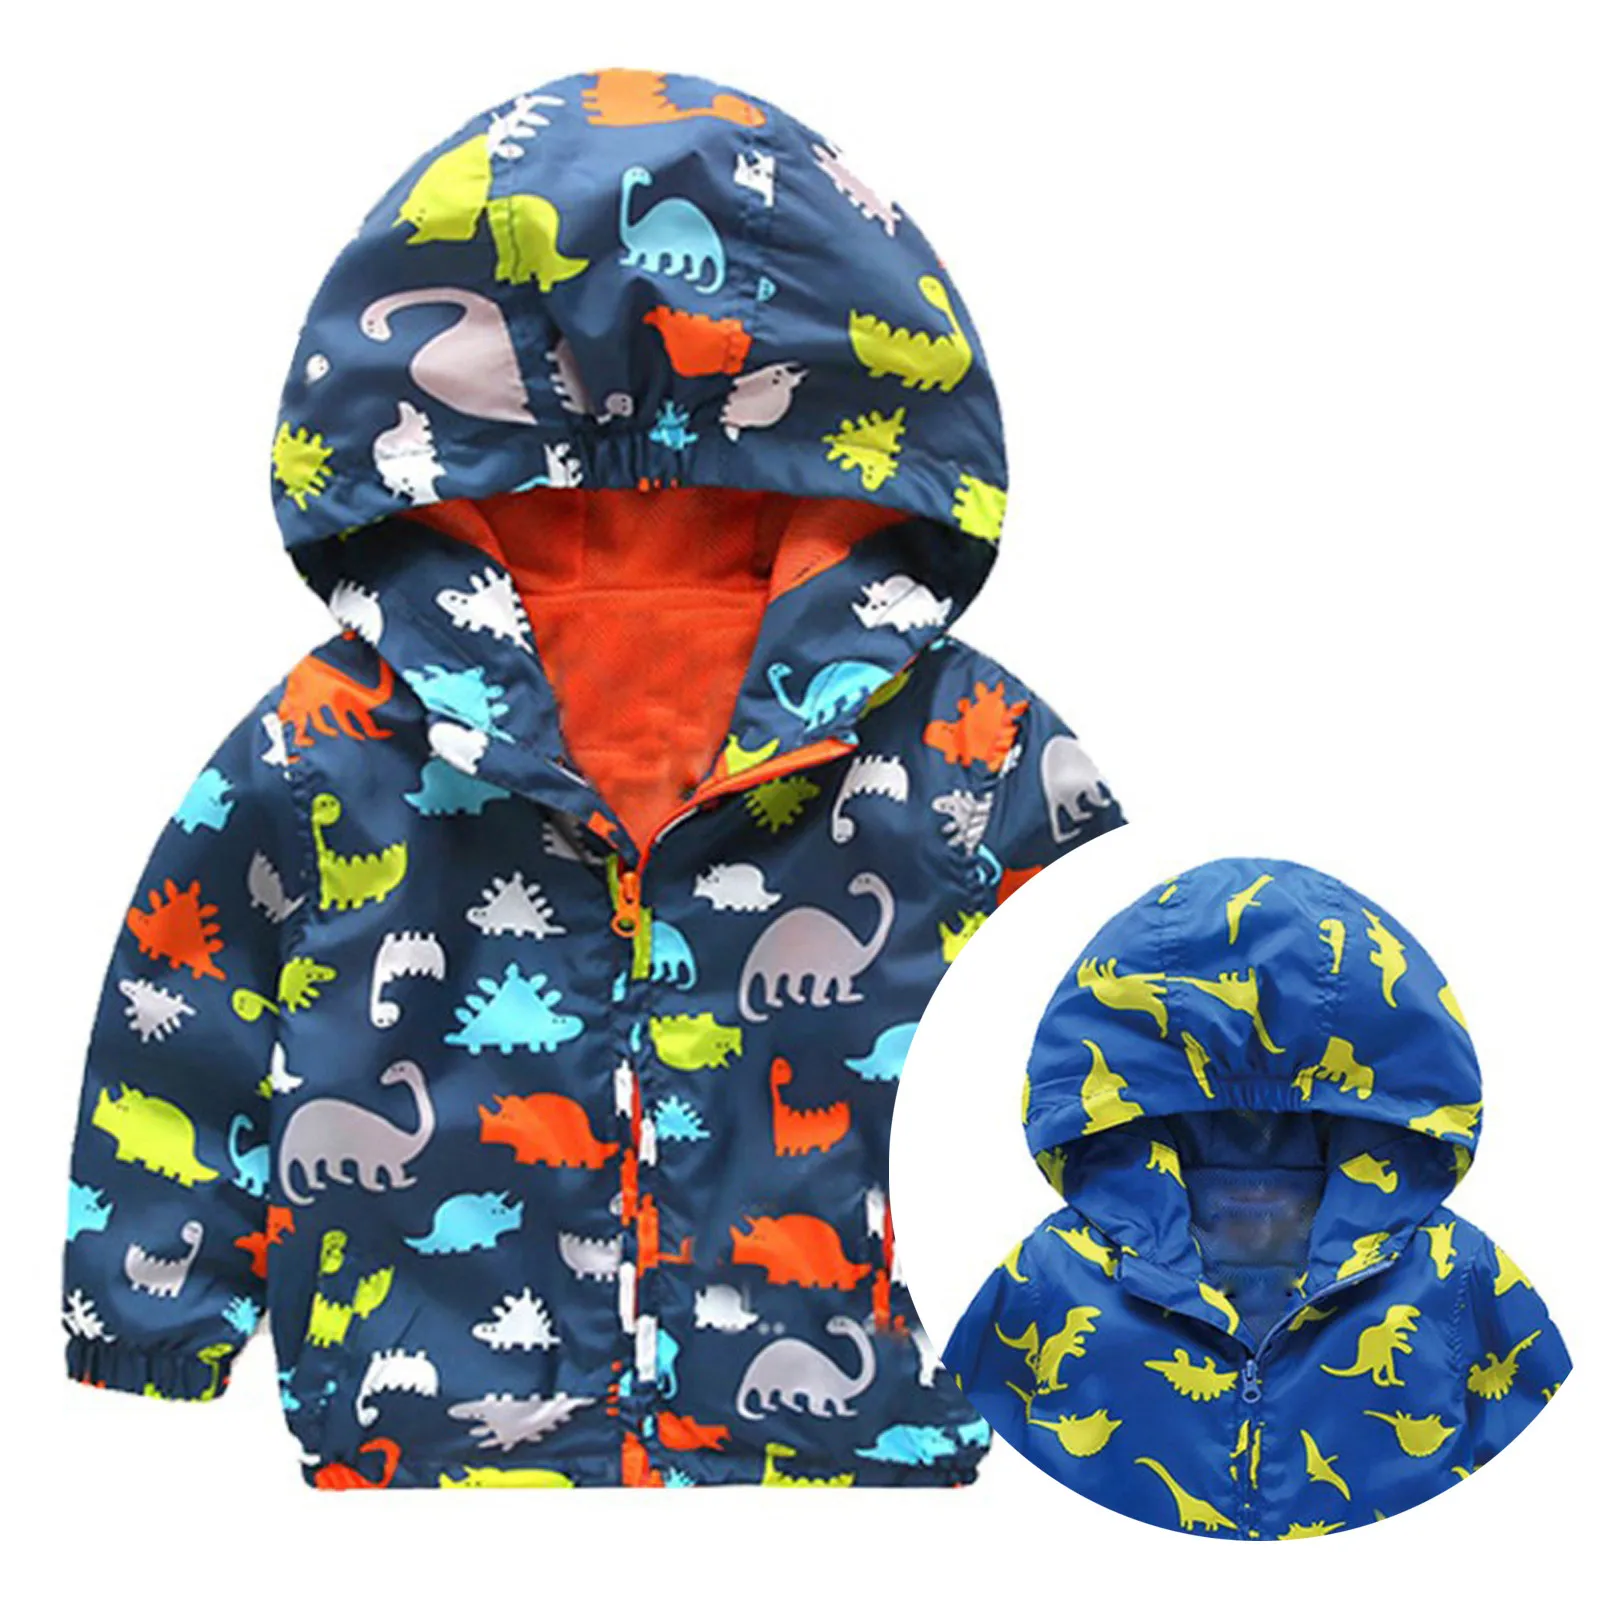 Модное водонепроницаемое пальто с капюшоном для маленьких мальчиков и девочек - Фото №1